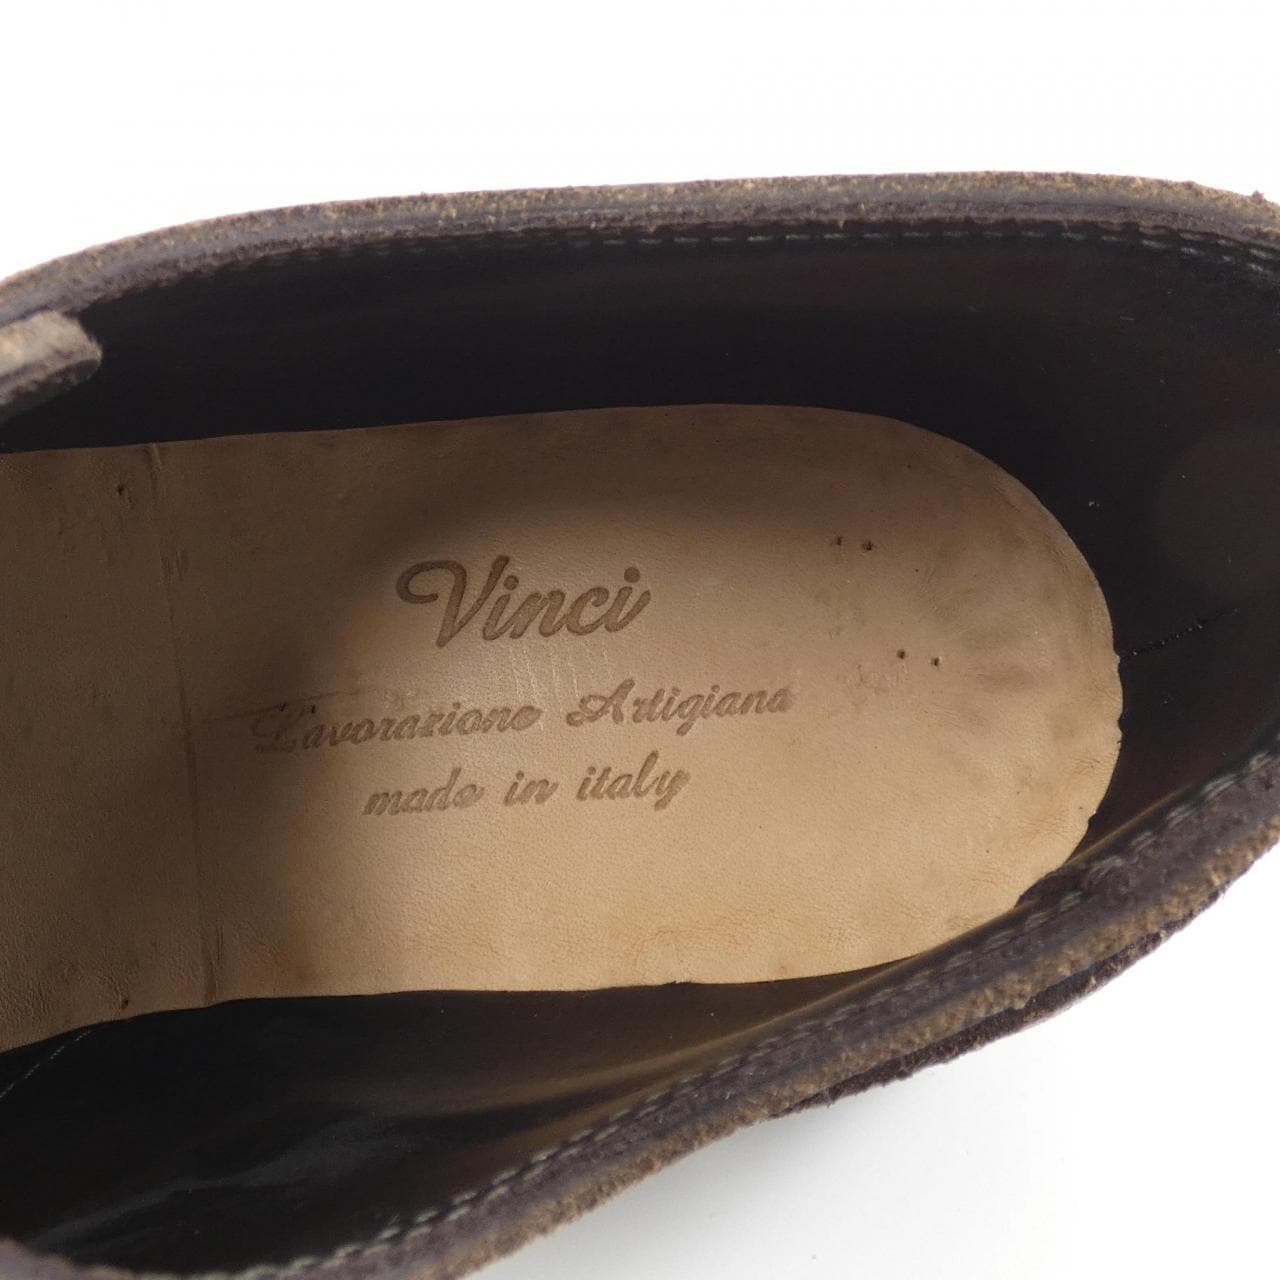 VINCI shoes